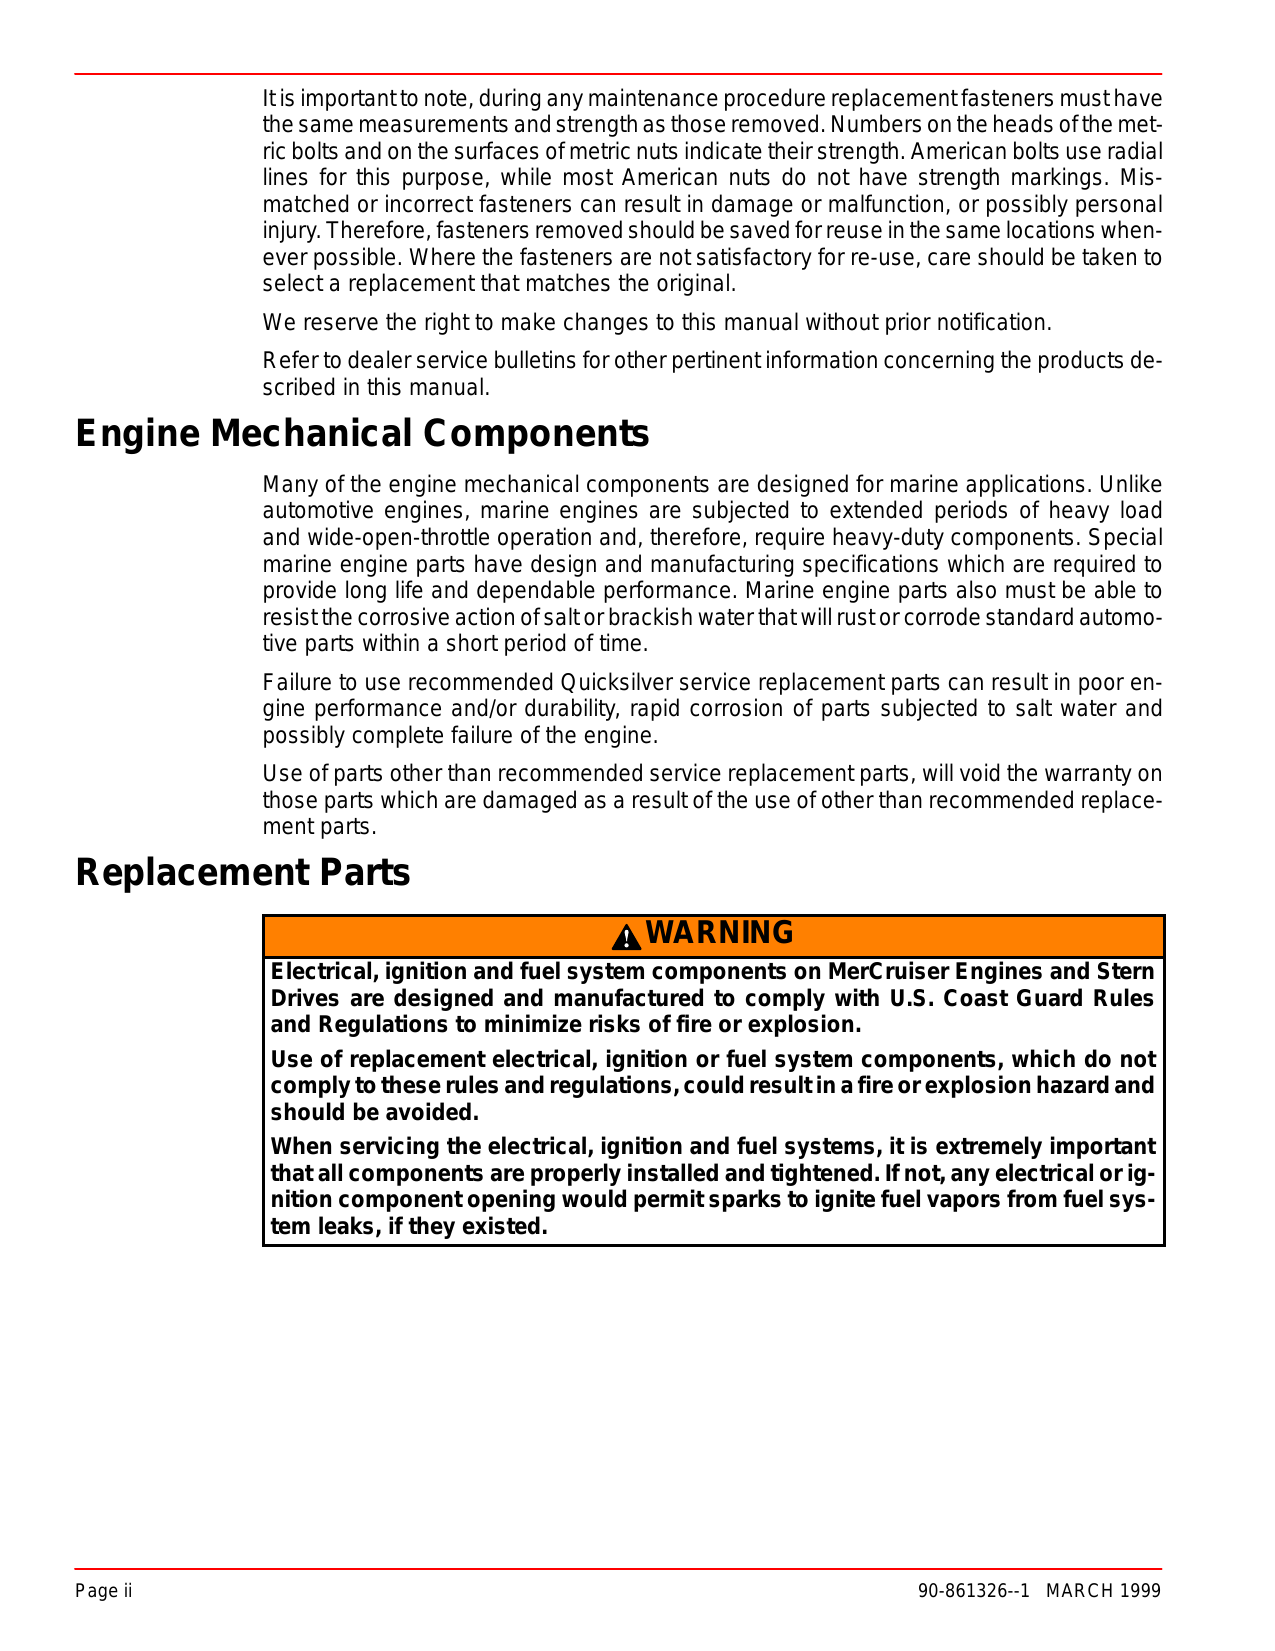 Mercury Mercruiser Marine engine Number 23, GM V-8 454 CID (7.4L)/502 CID (8.2L) service manual Preview image 3